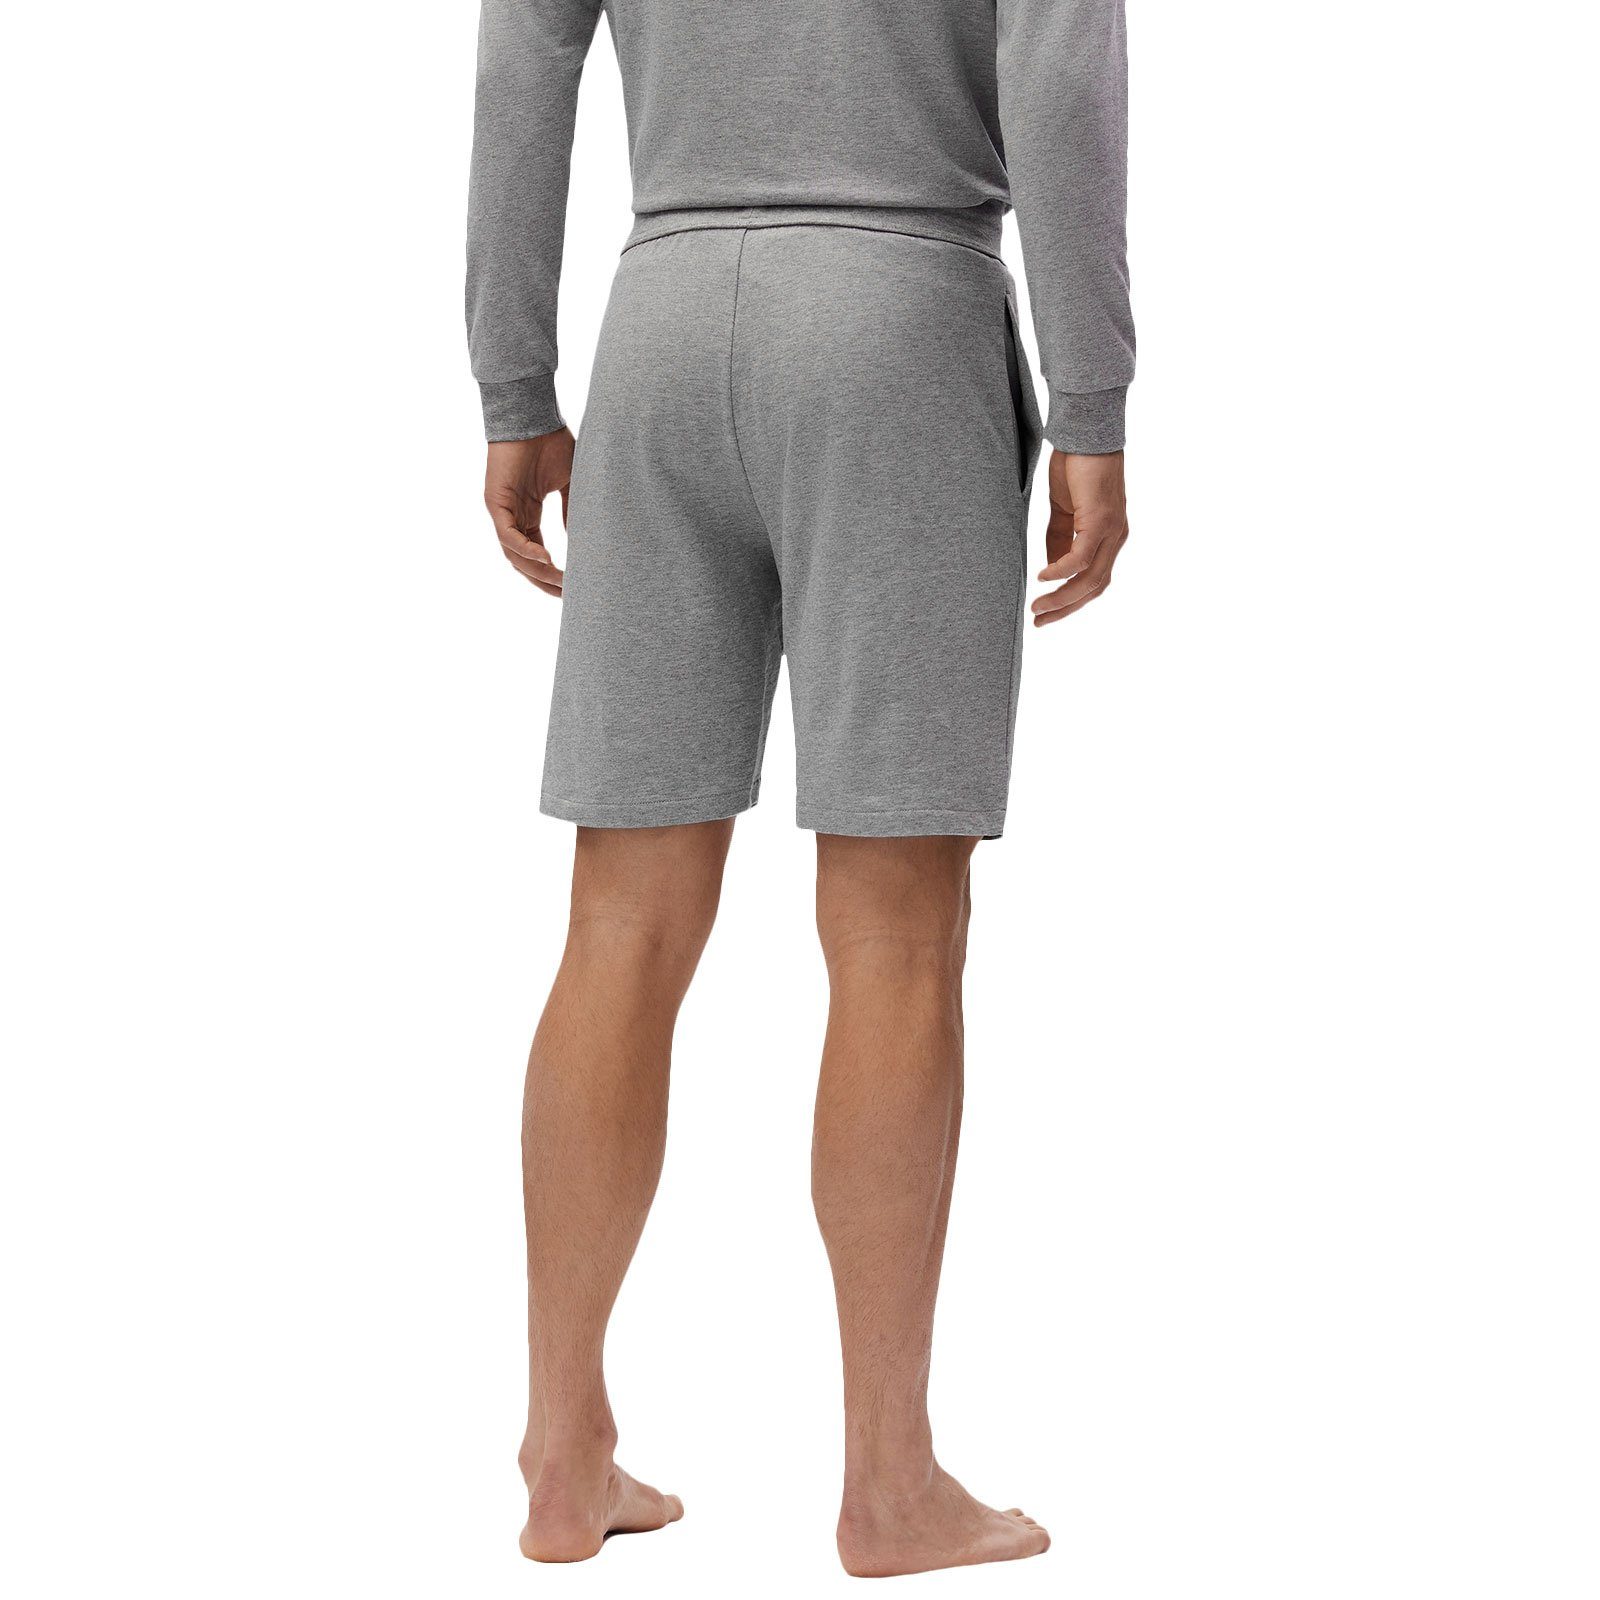 BOSS Shorts Authentic Shorts 033 grey mit medium kontrastfarbenen Streifen